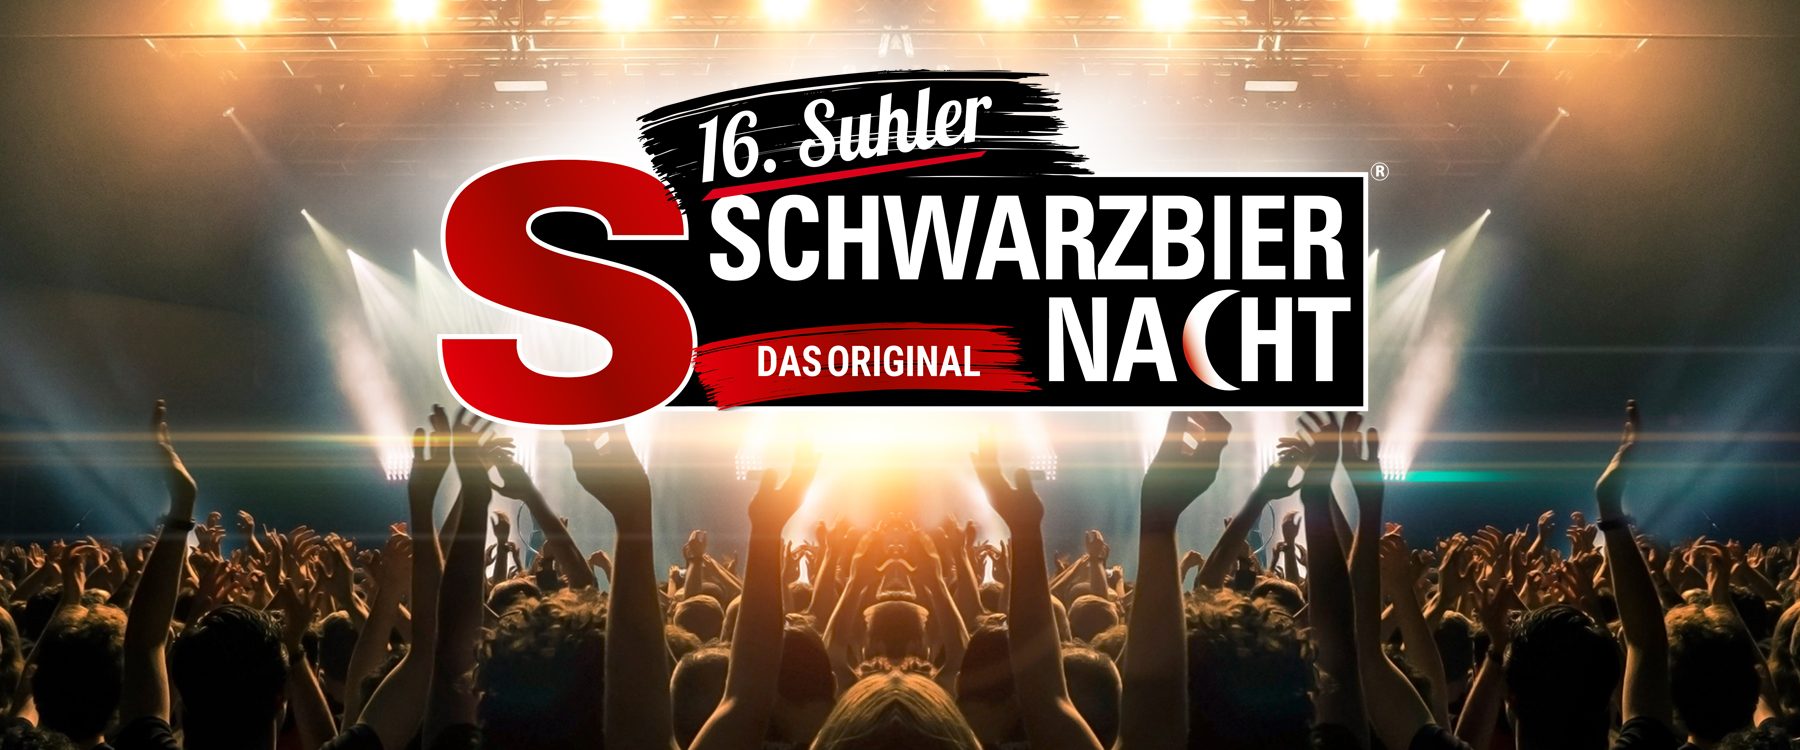 Suhler-Schwarzbiernacht-Gewinnspiel